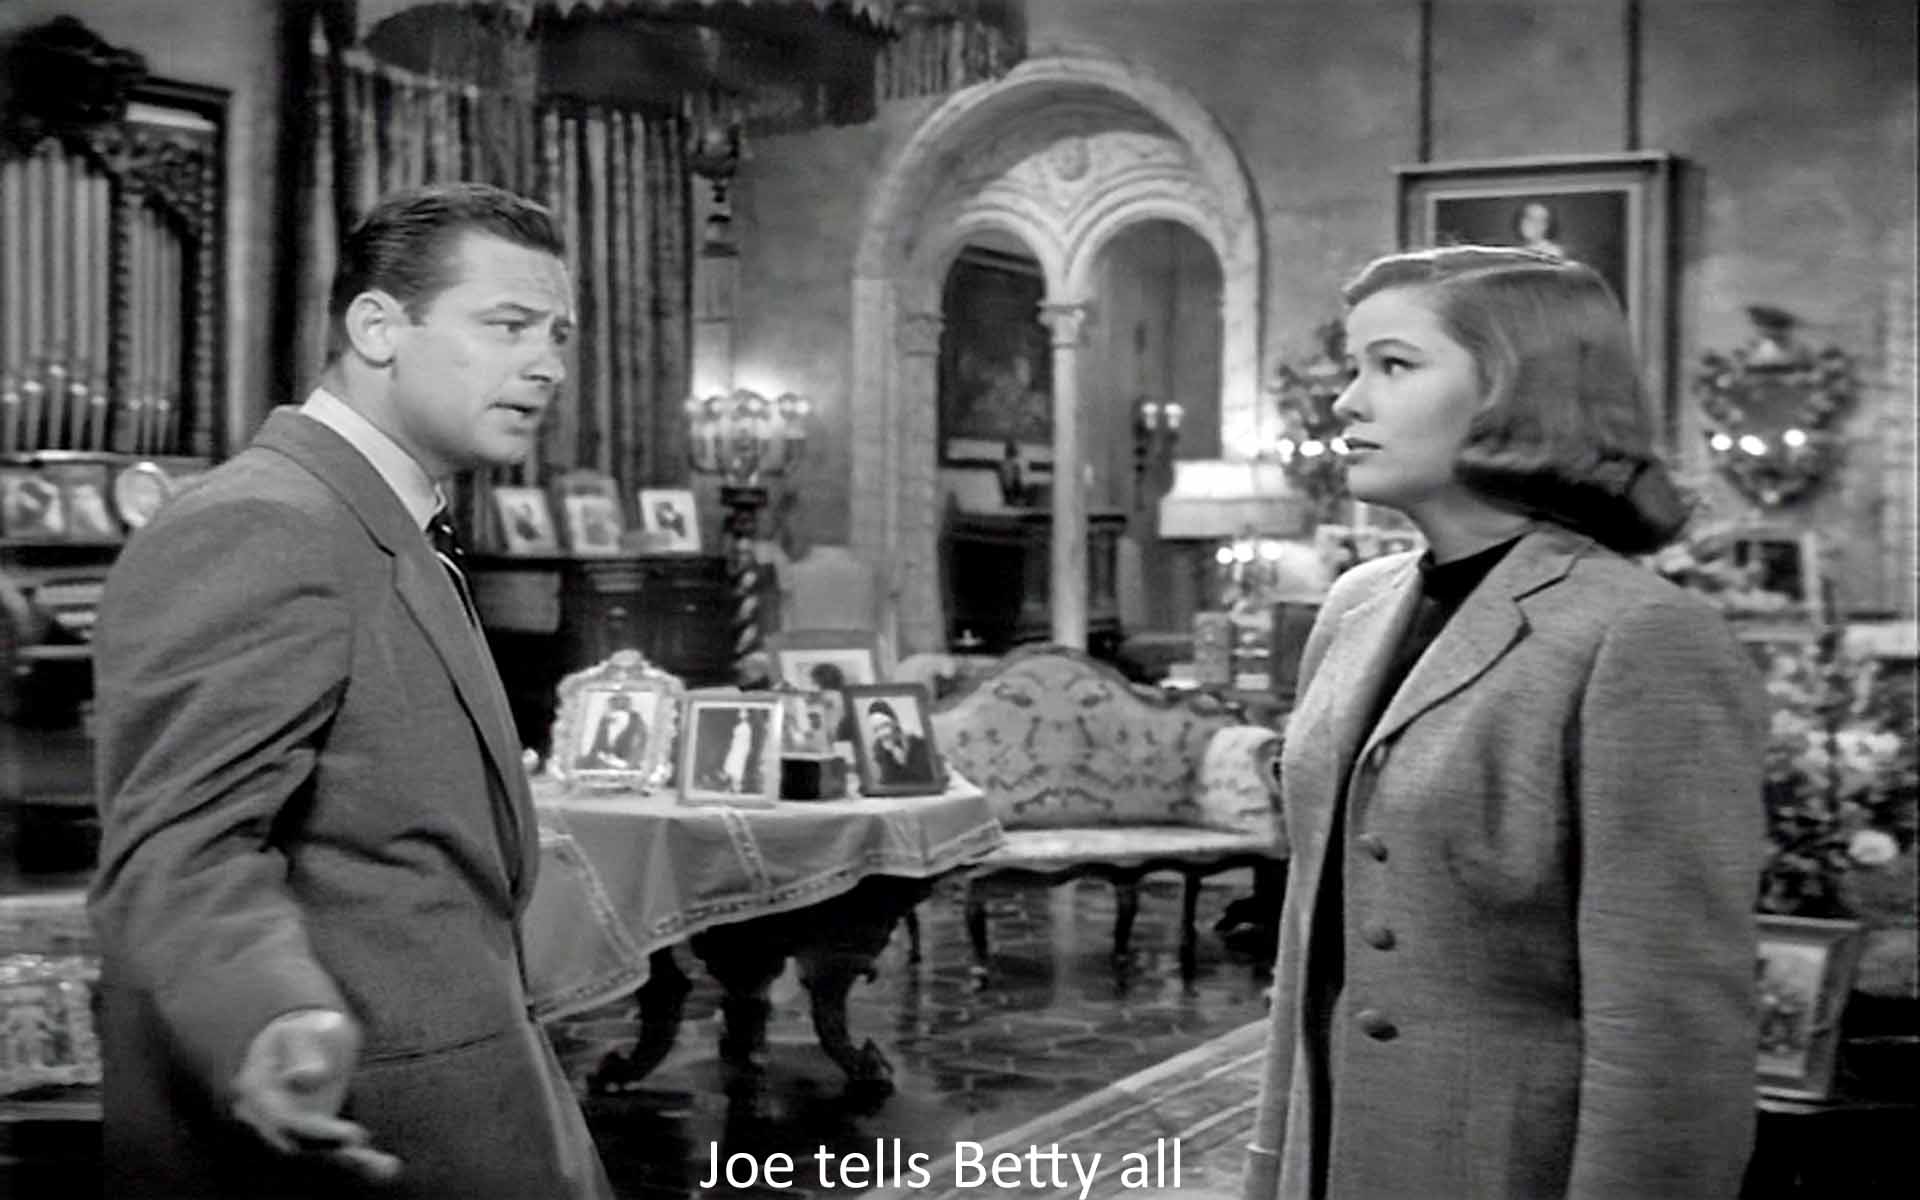 Joe tells Betty all